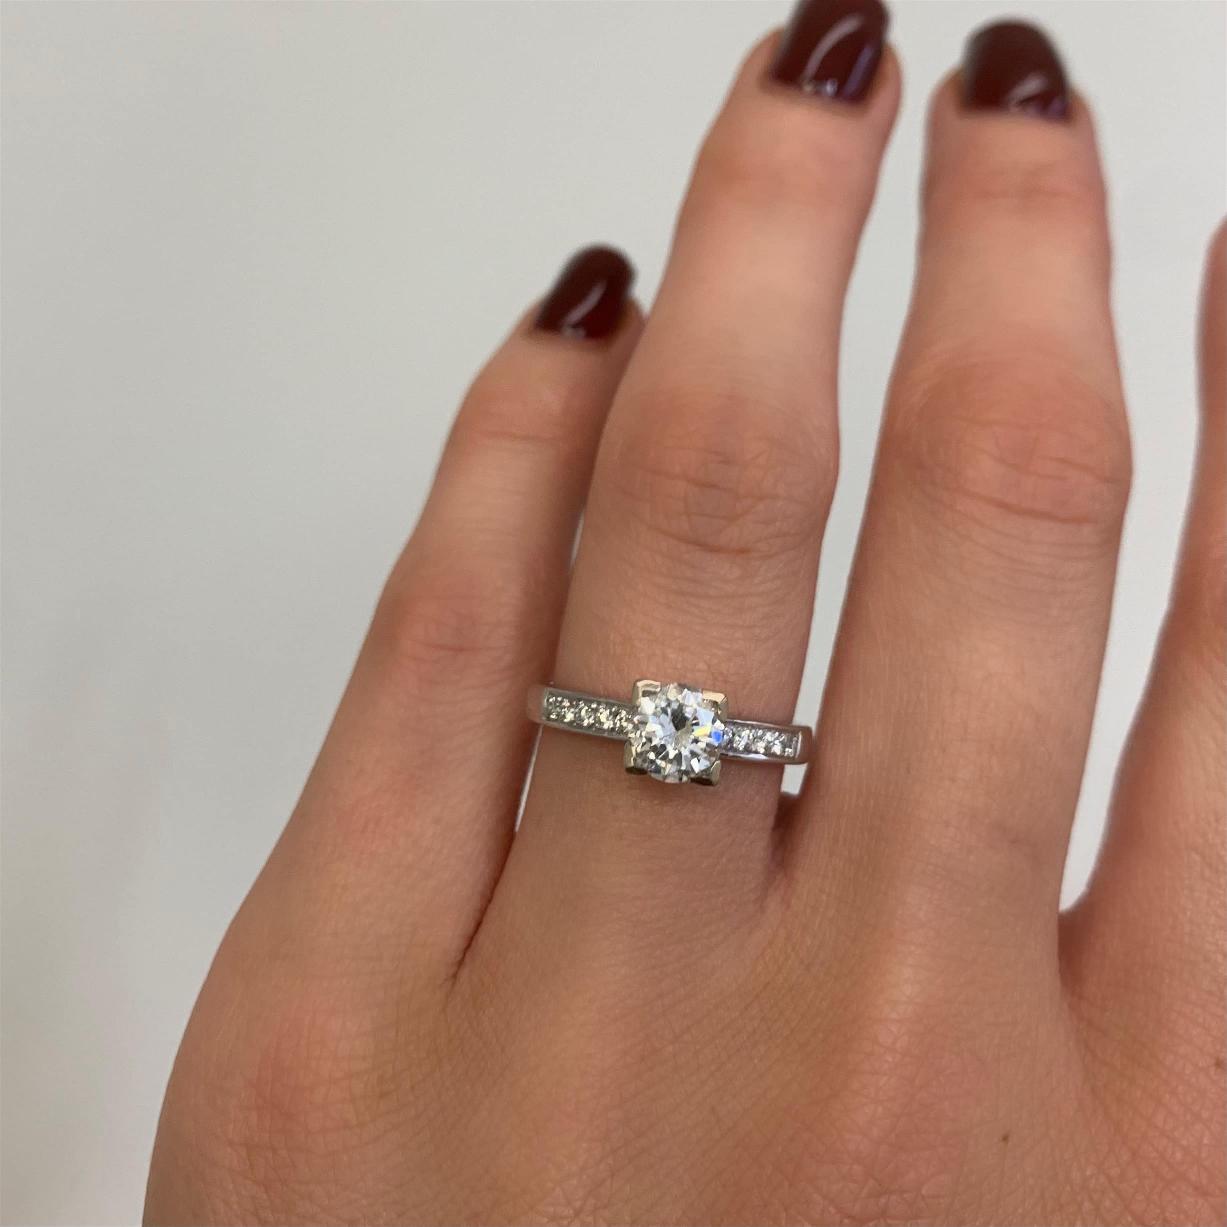 יד אלגנטית המתהדרת בטבעת אירוסין נוצצת, דגם טבעת אירוסין Jenika עם רצועת כסף מעוטרת באבנים קטנות, עכשיו ב-47% הנחה.